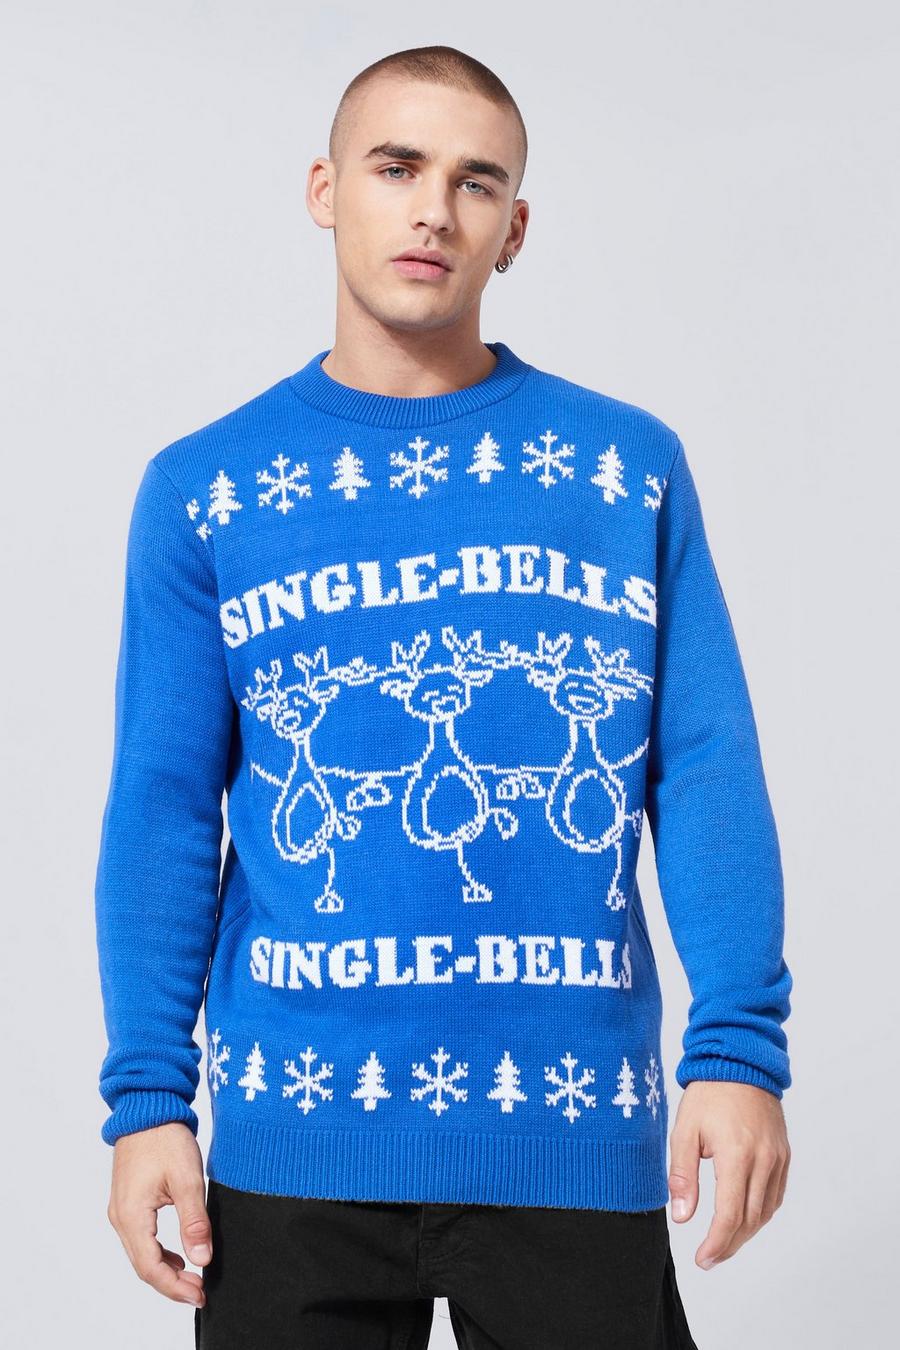 Maglione natalizio con slogan Single Bells, Navy